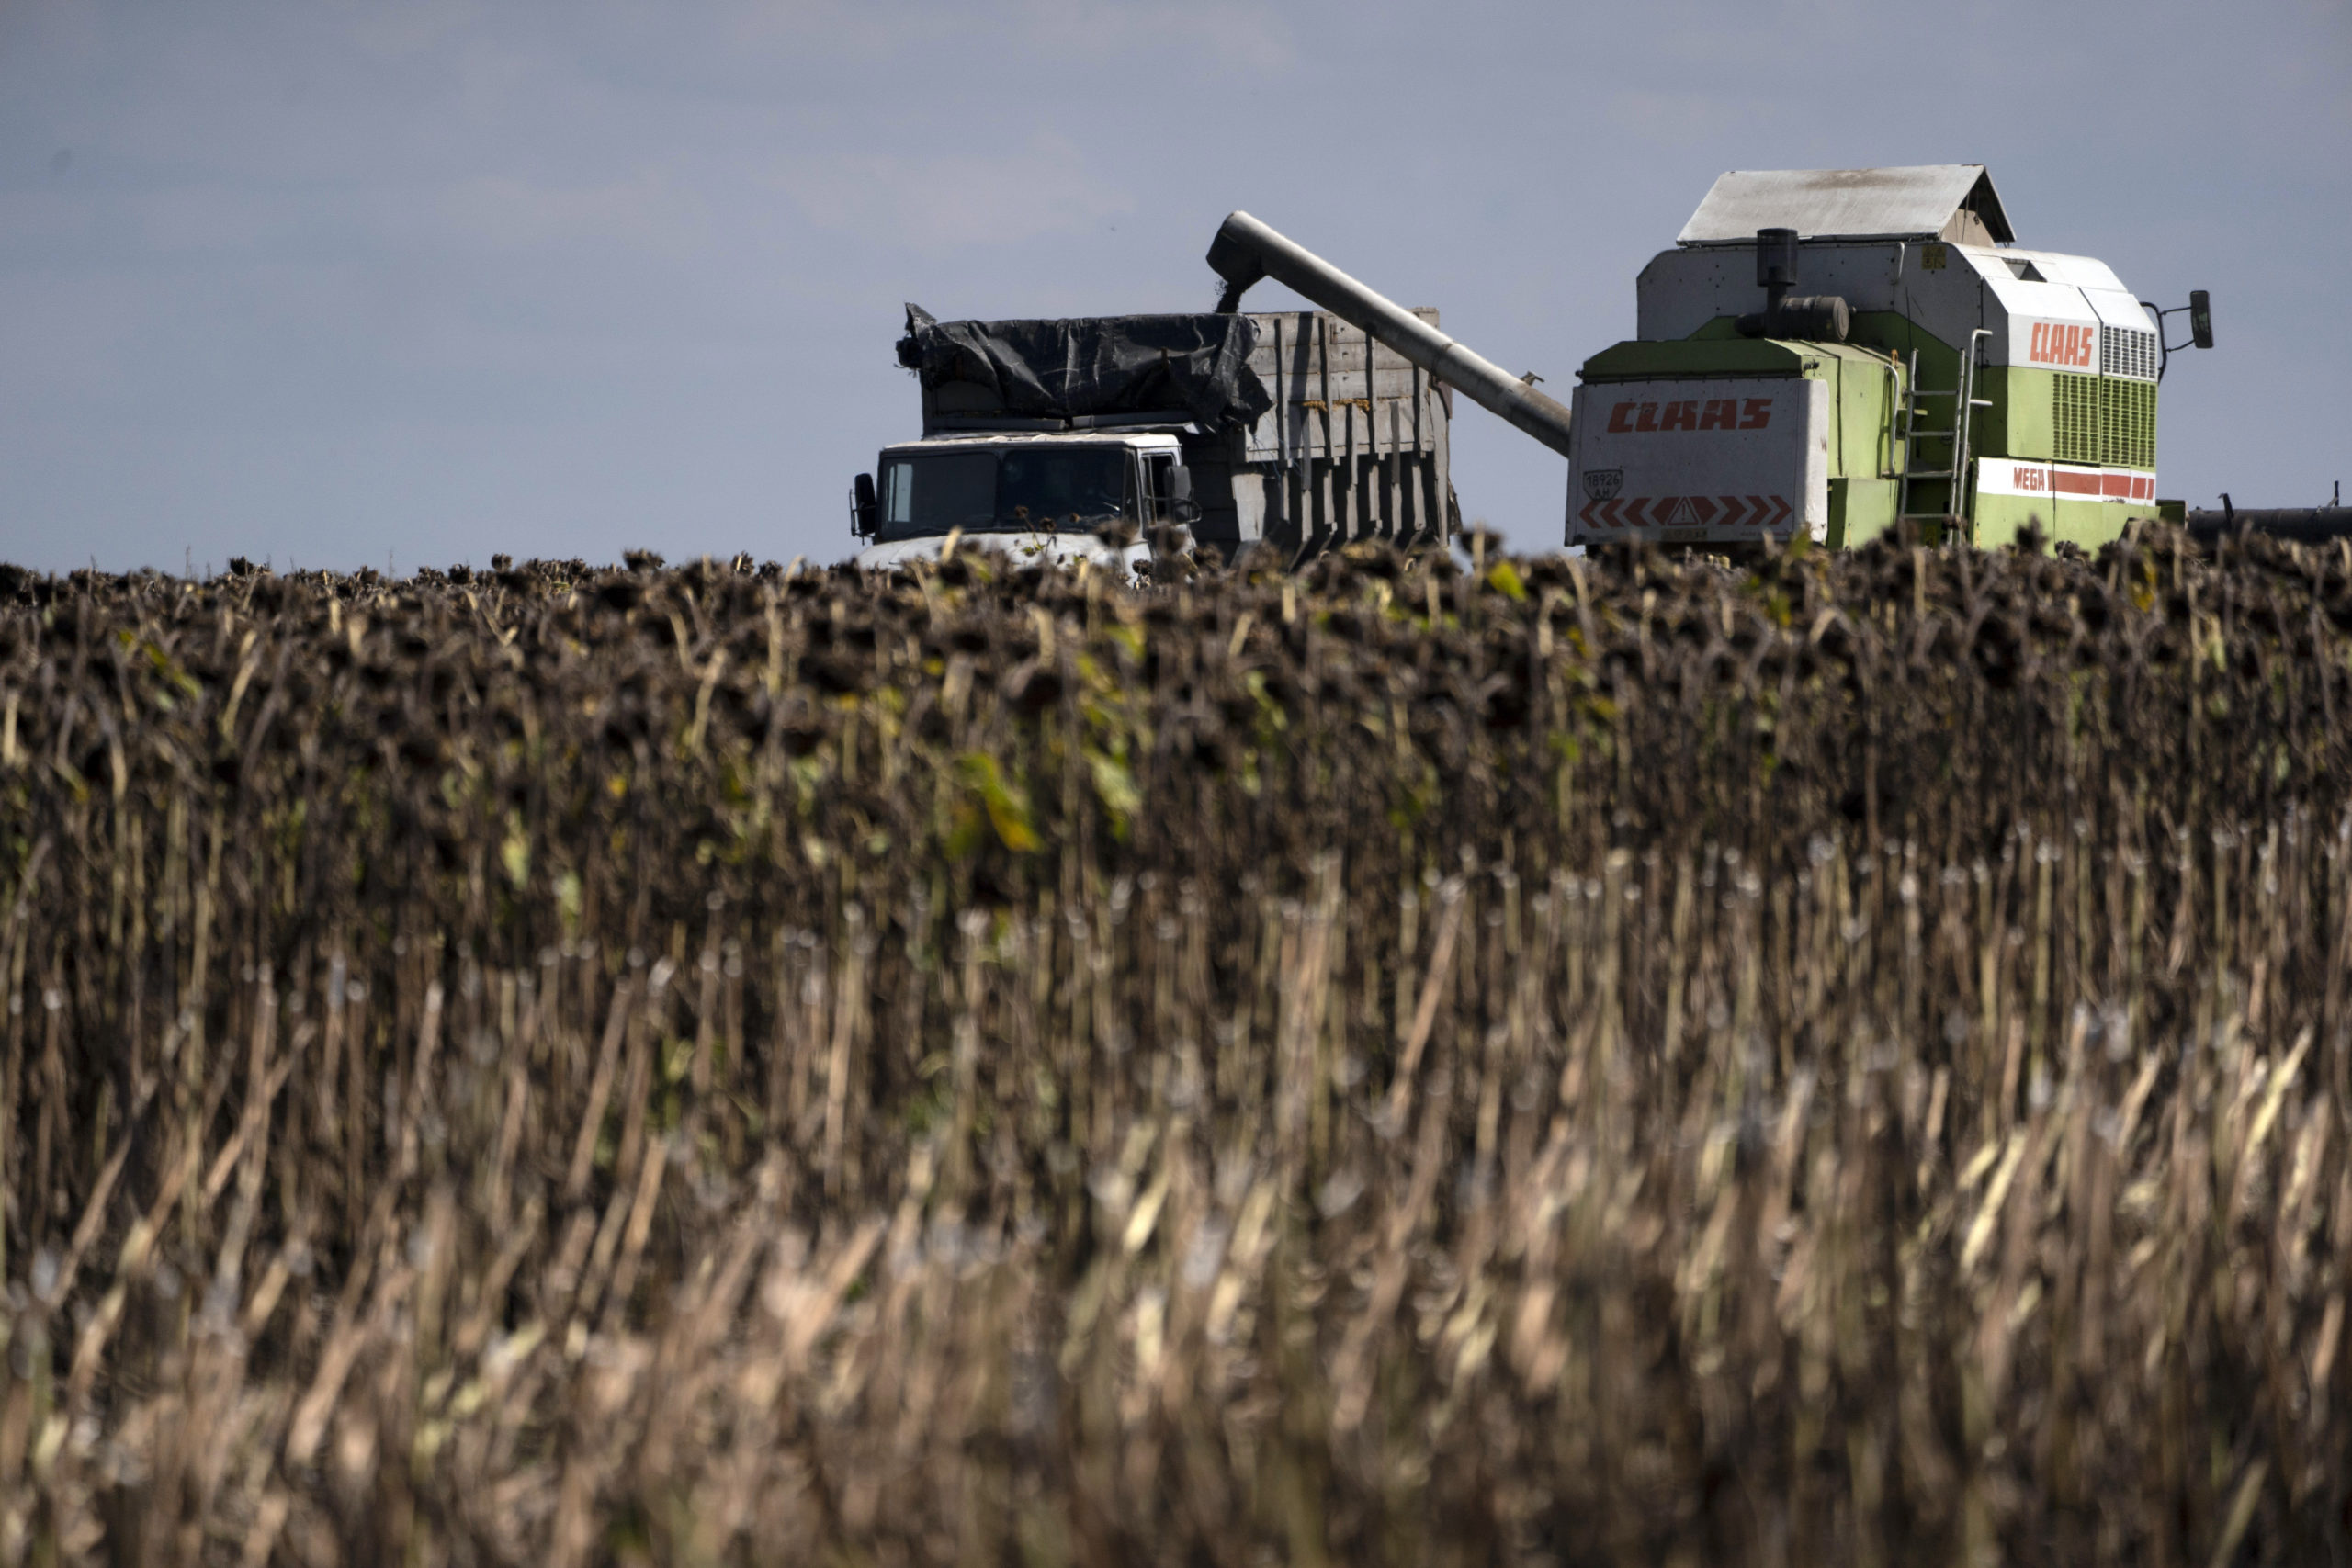 Ρωσία: Επιμένει στις απαιτήσεις για ελεύθερη πρόσβαση ρωσικών εξαγωγών σιτηρών – λιπασμάτων στις παγκόσμιες αγορές